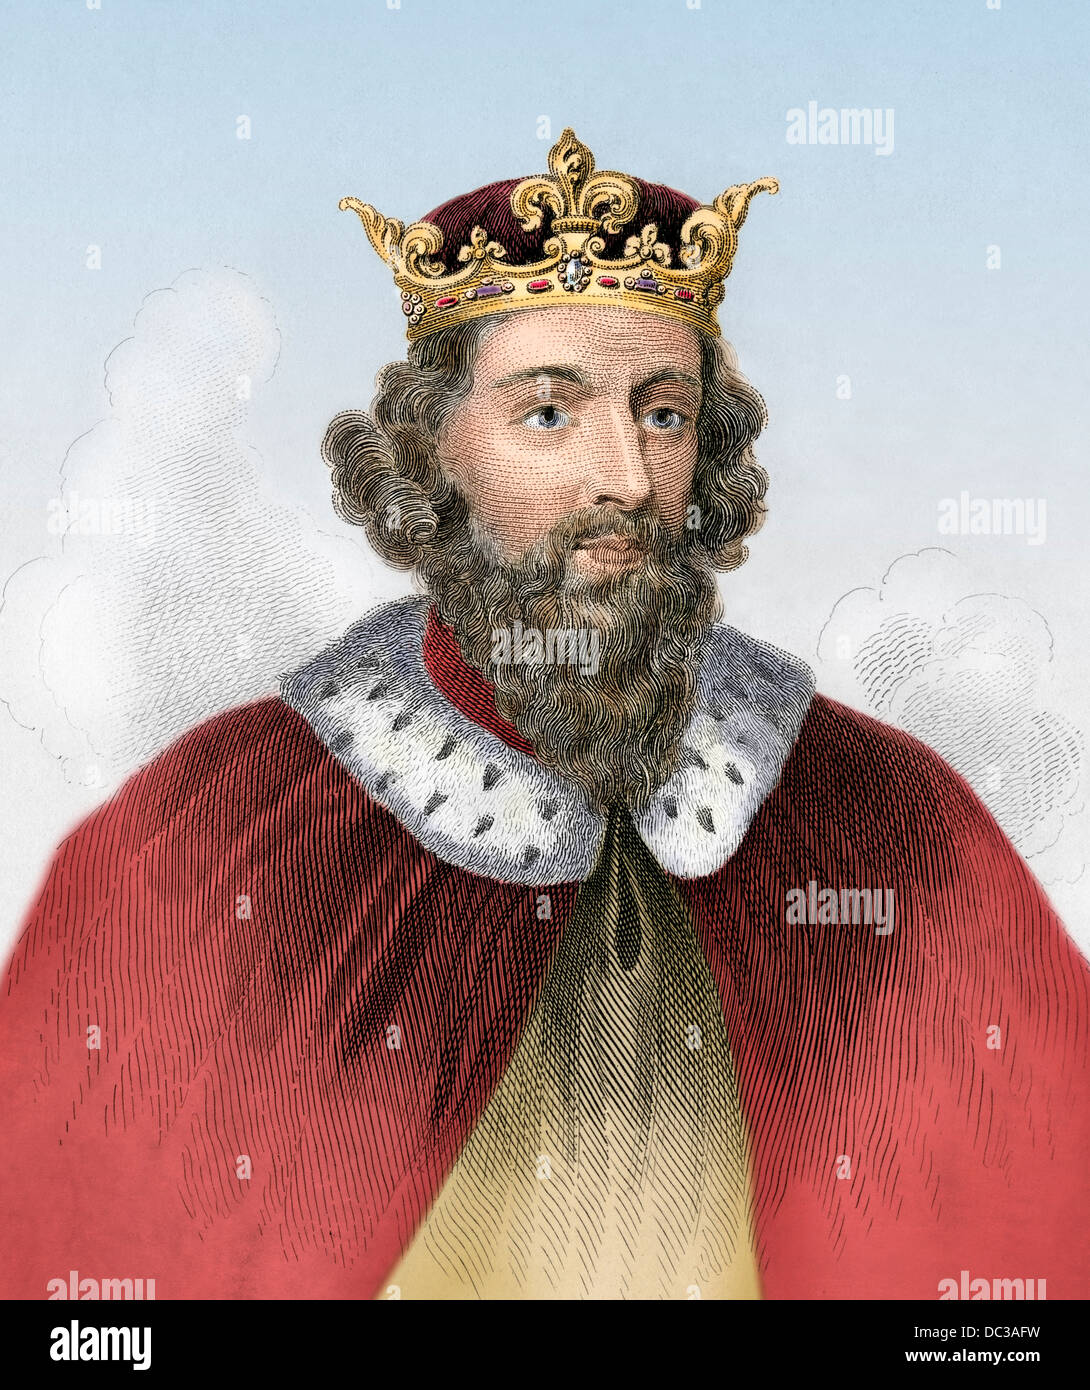 Alfredo el Grande, rey de Wessex, 800s D.C. xilografía coloreada a mano Foto de stock